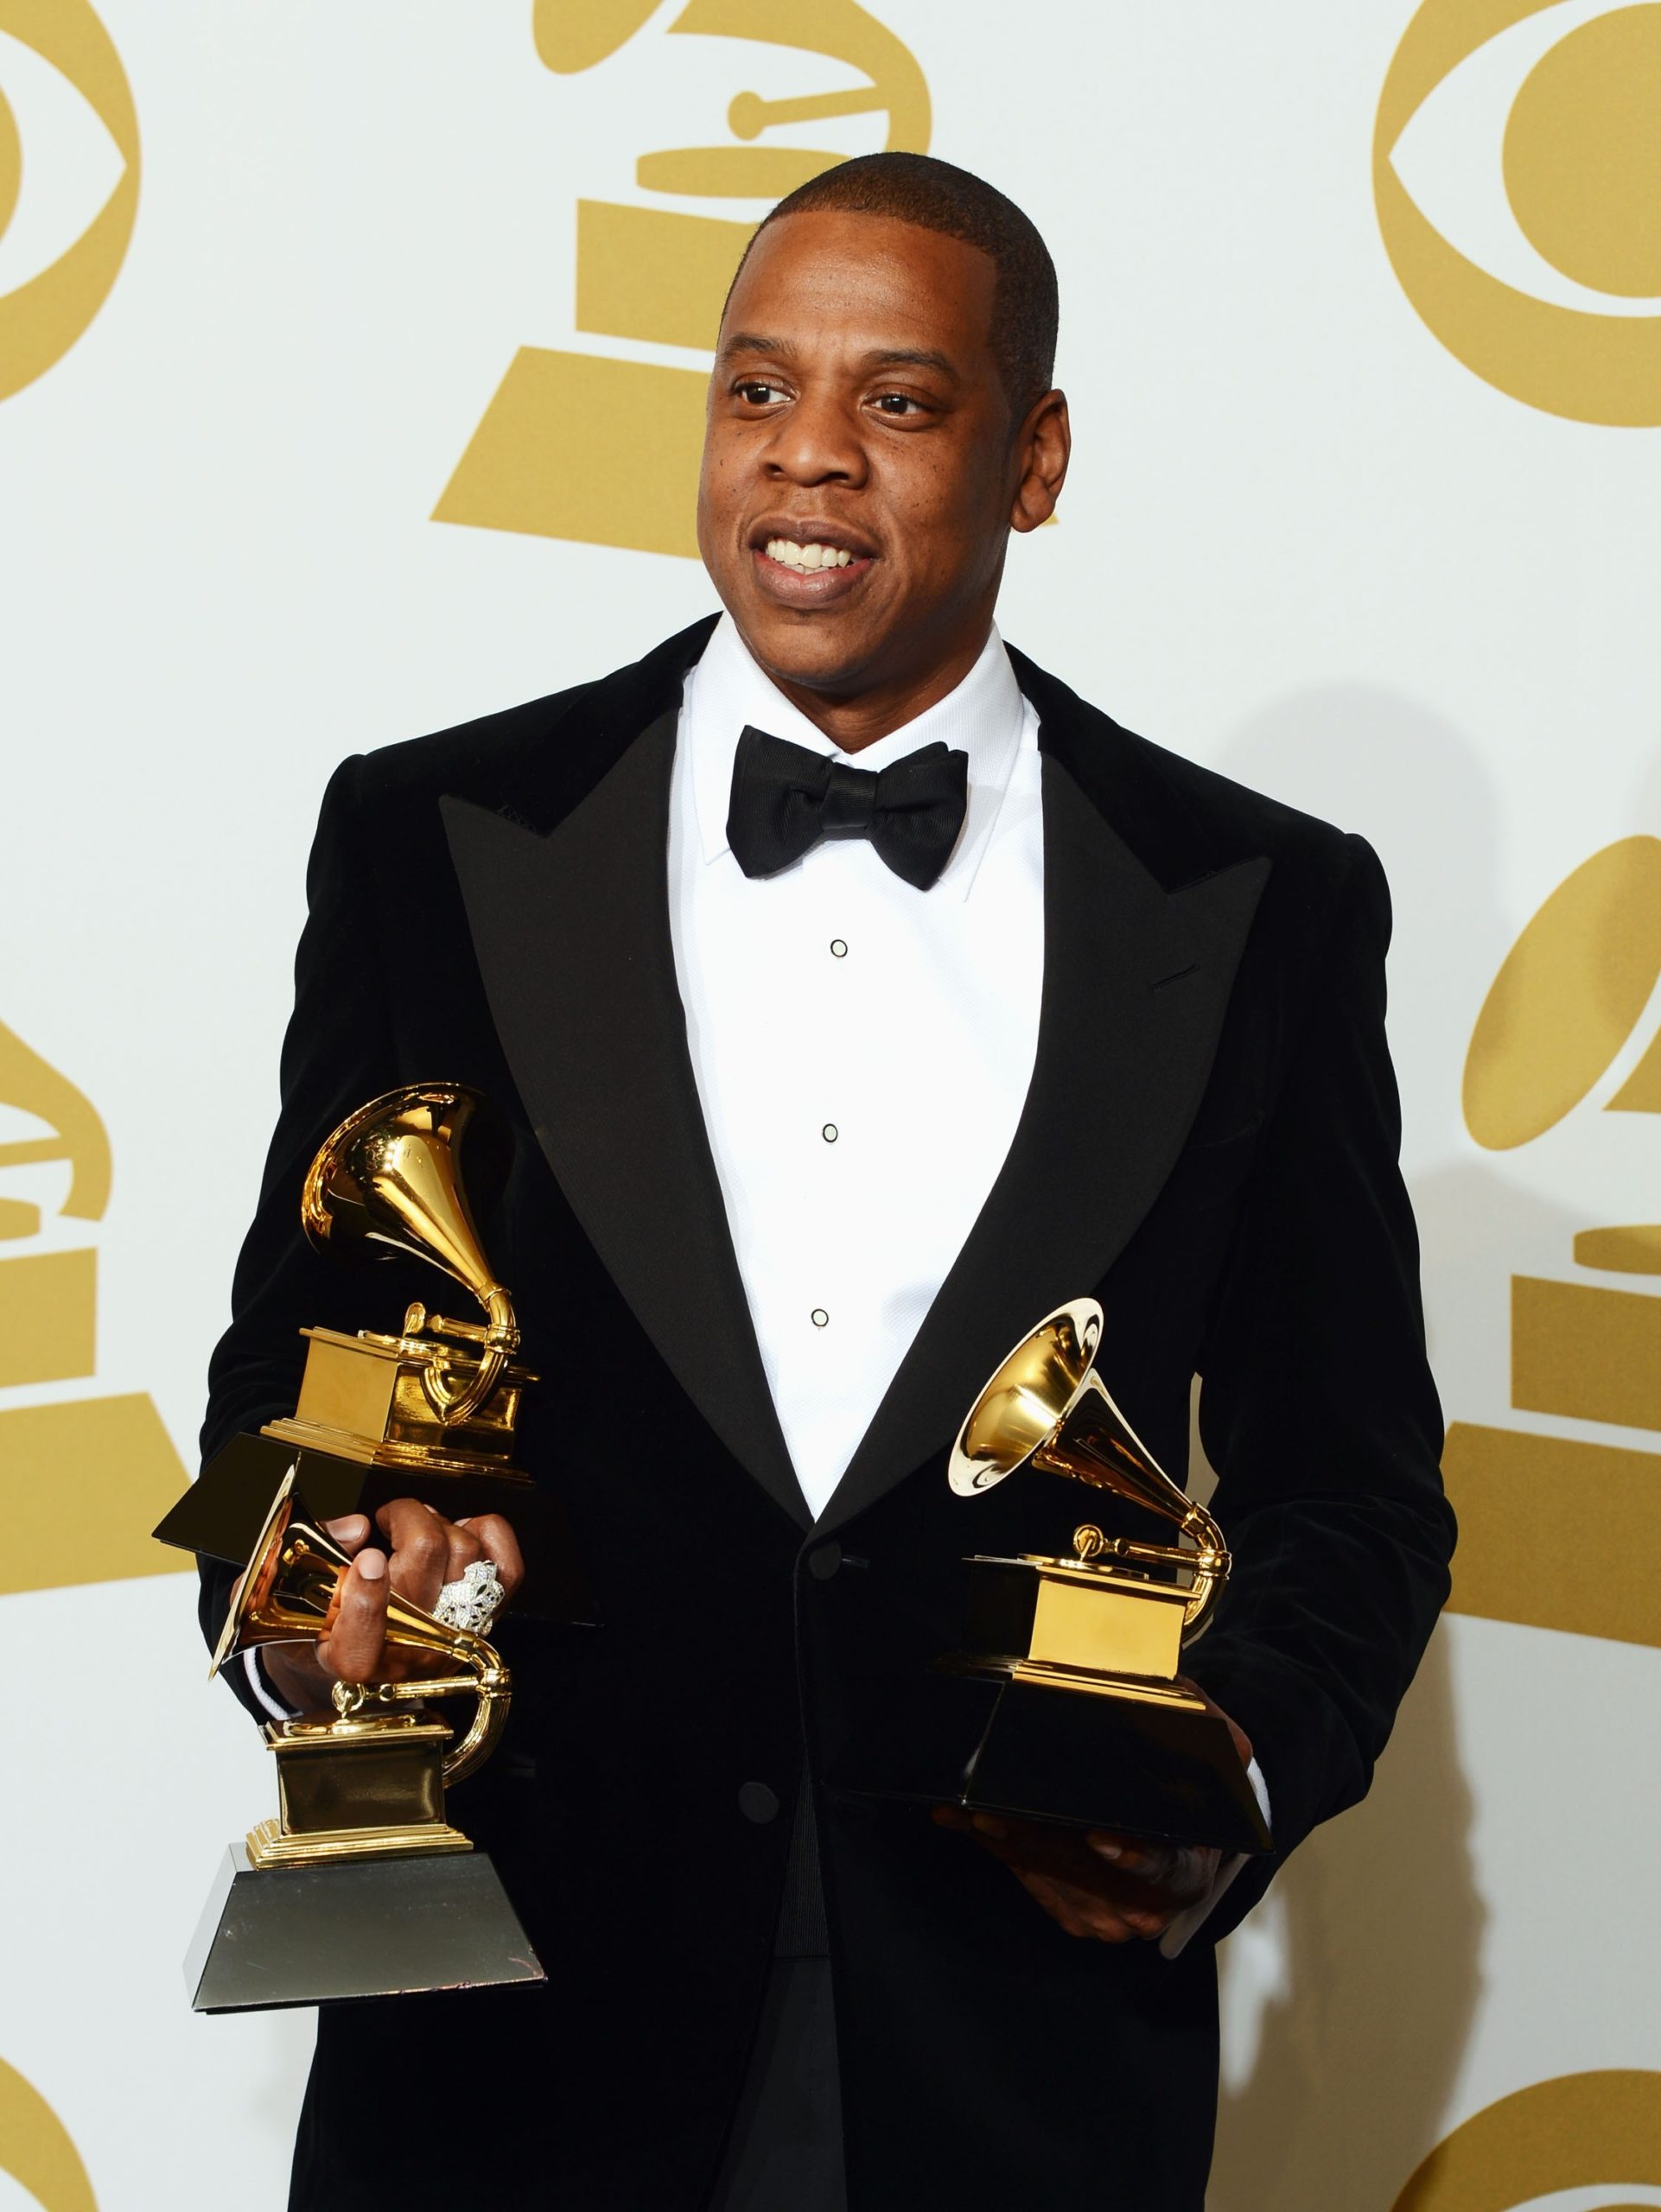 Jay-Z's Net Worth: How has he earned his billions?